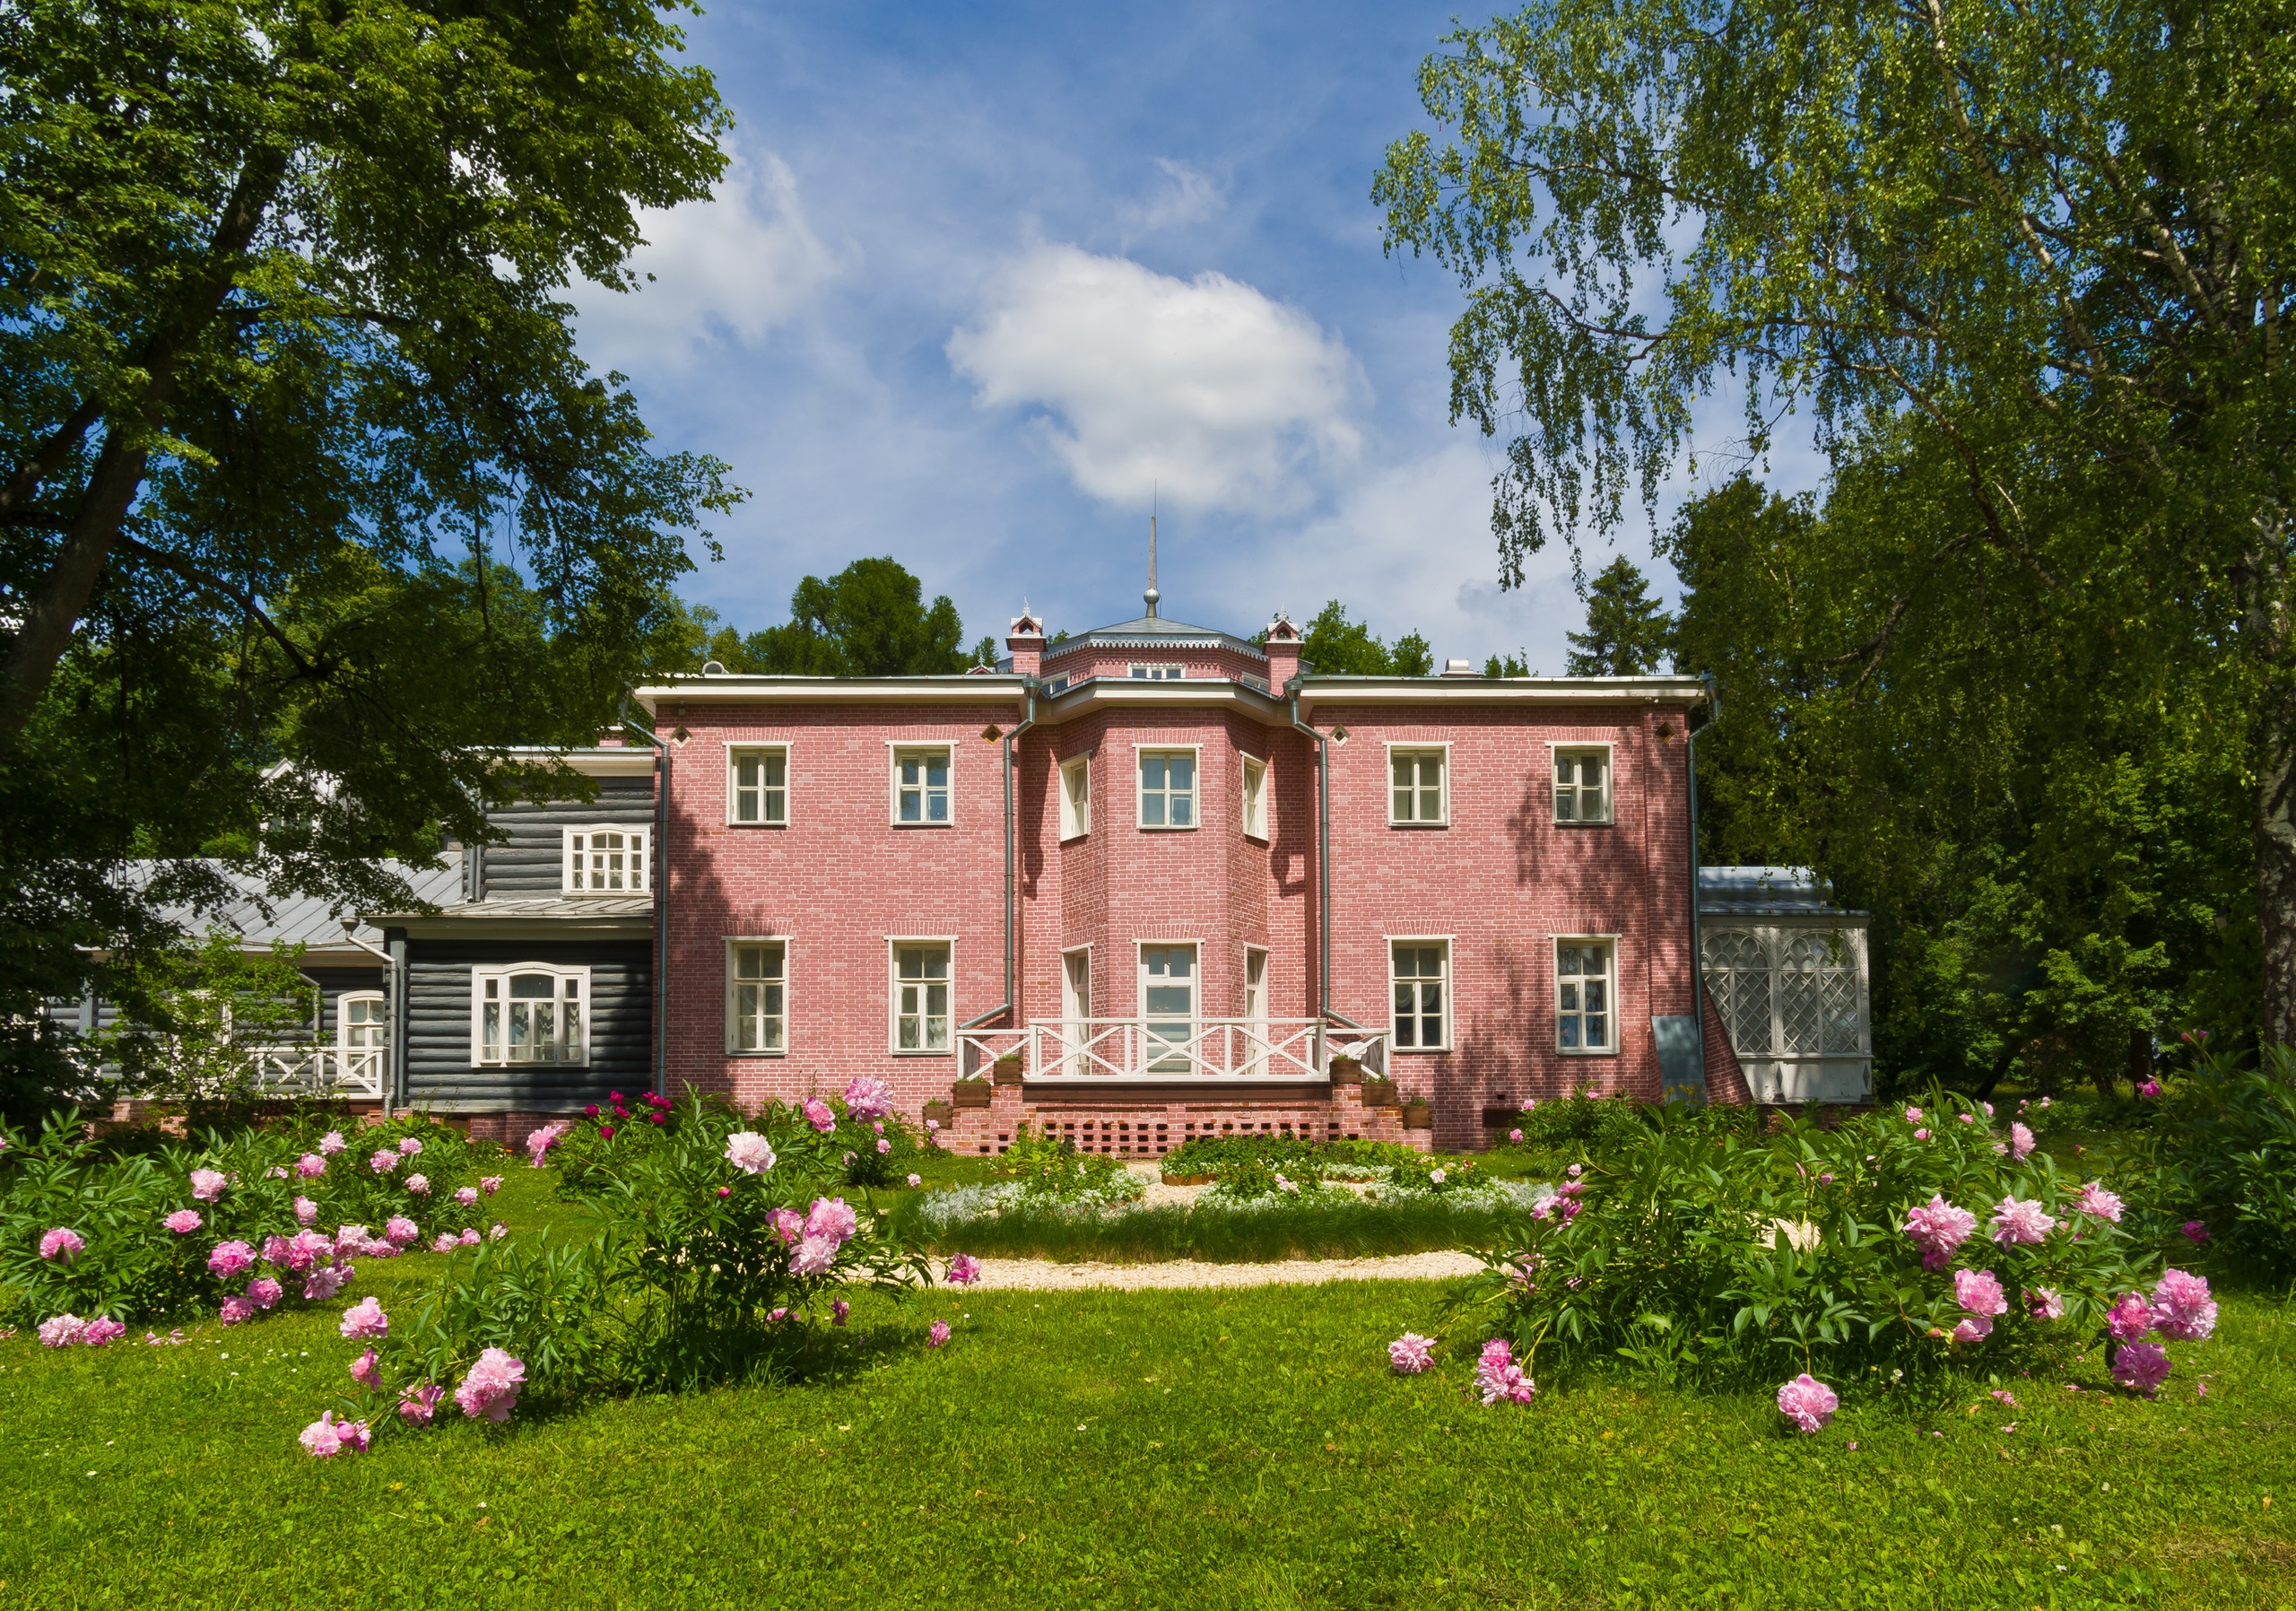 Усадебный дом был построен по чертежам поэта Евгения Баратынского. Позже в Муранове жил сын поэта Федора Тютчева